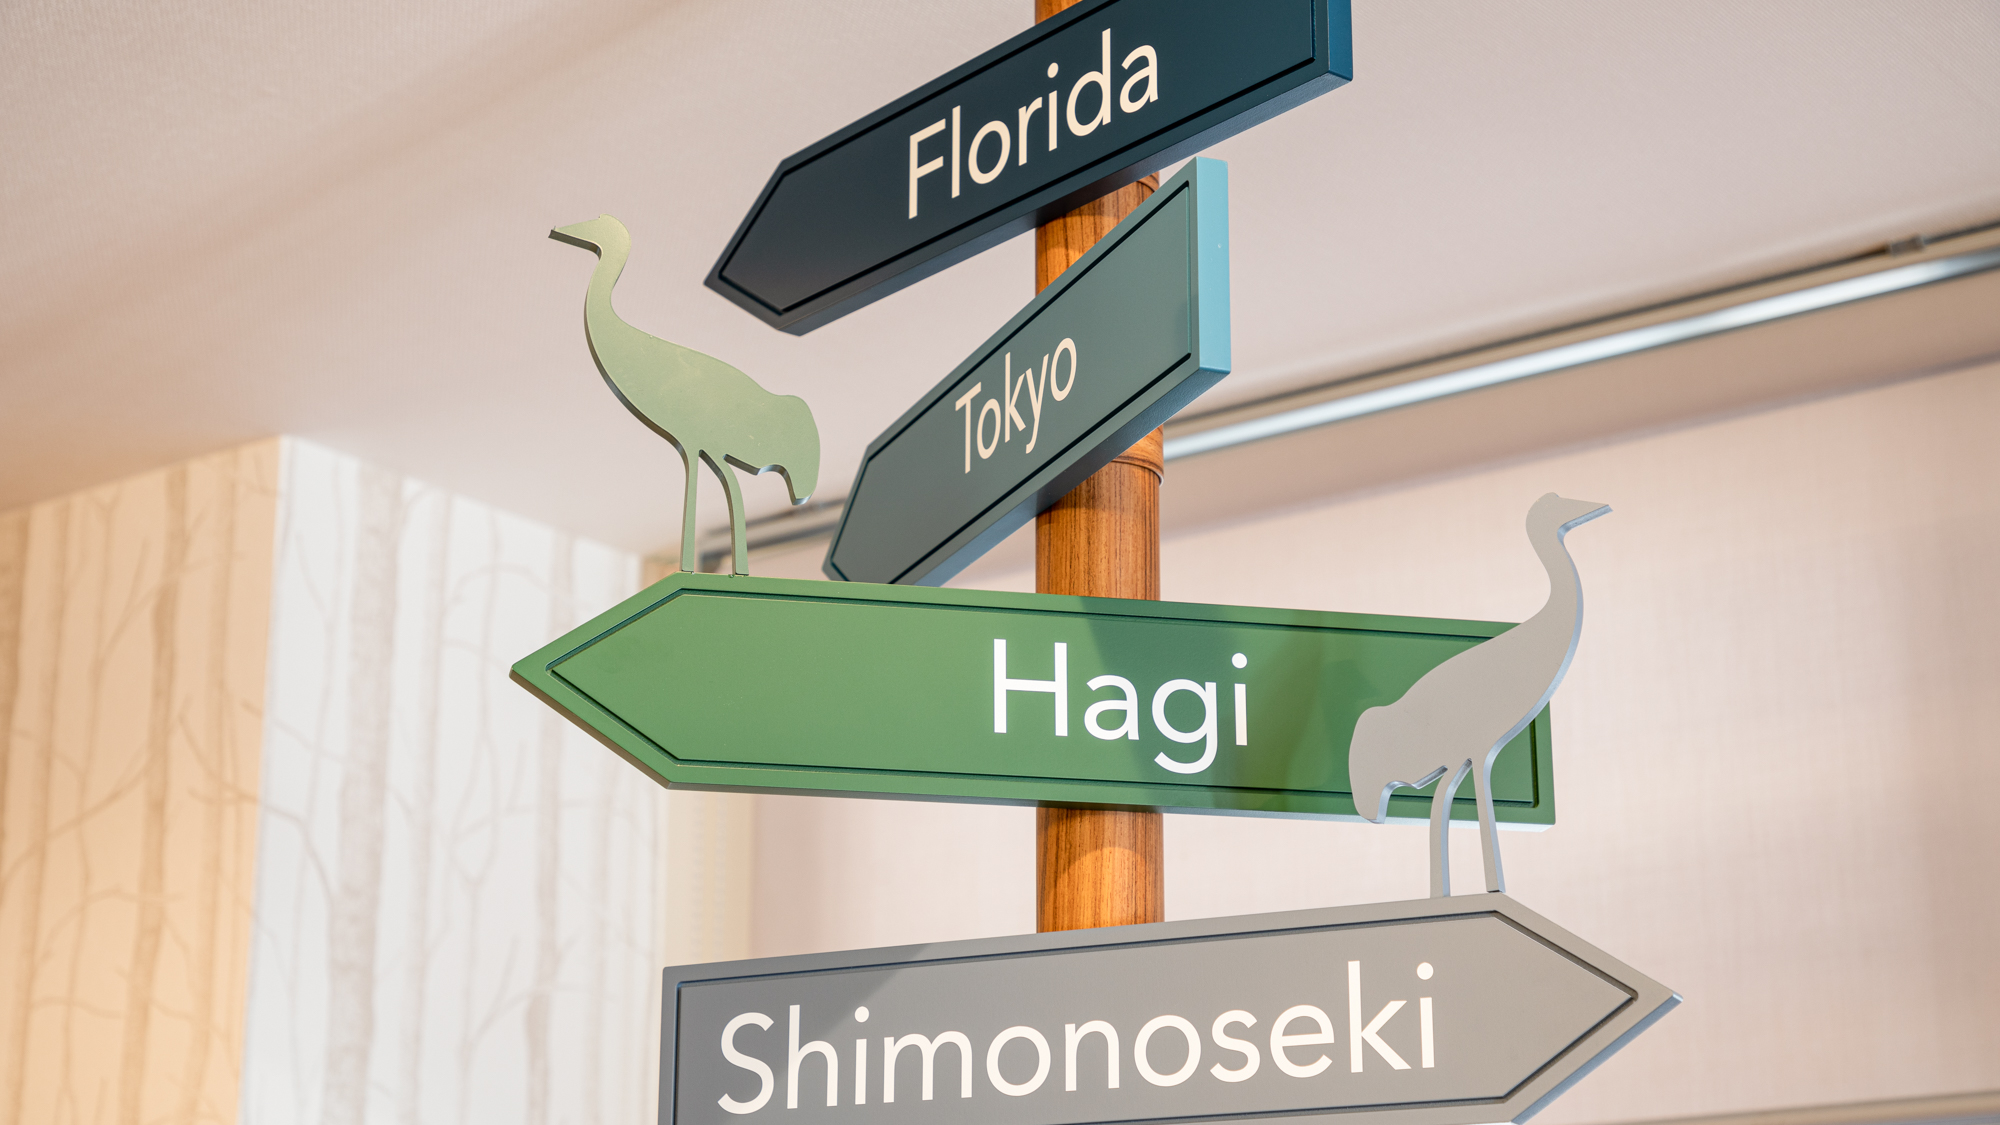 【ライブラリーカフェ】山口県の鳥「ナベヅル」をモチーフにした看板。それぞれ正しい方角を指しています